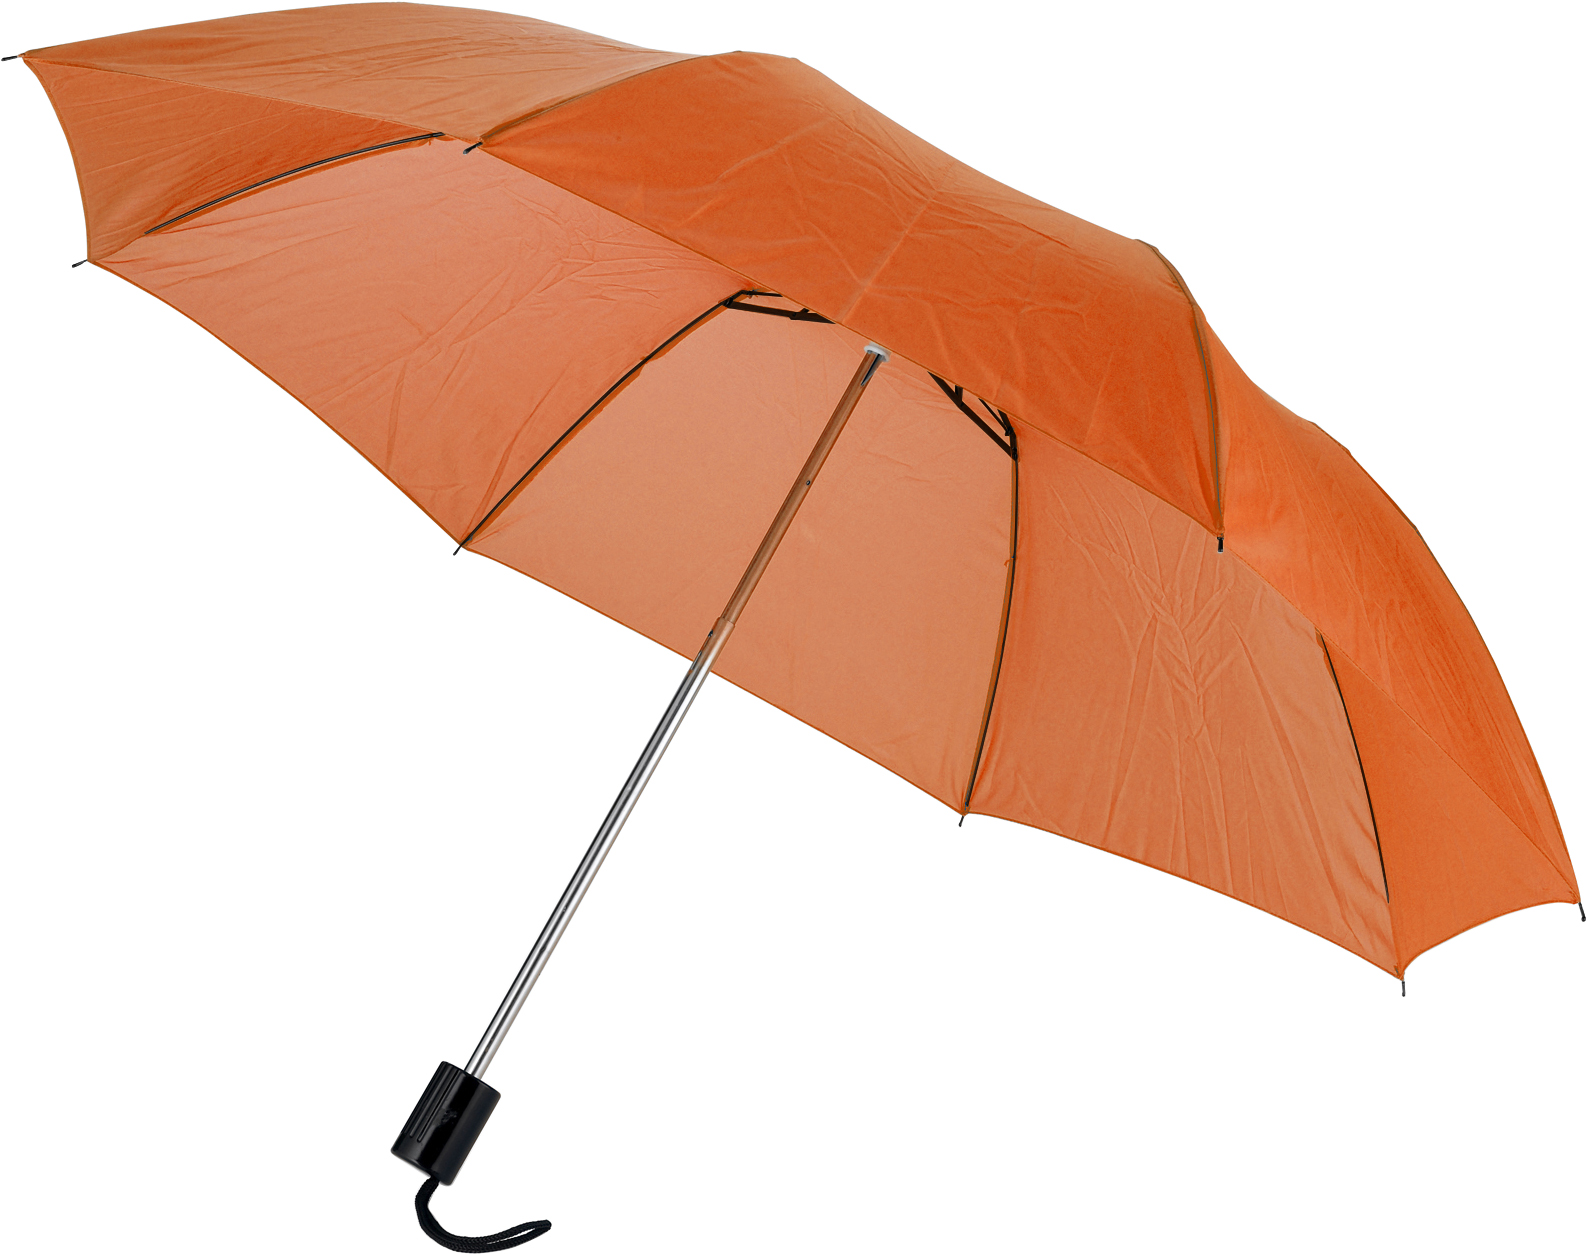 004092 007999999 3d090 ins det01 fal - Foldable umbrella